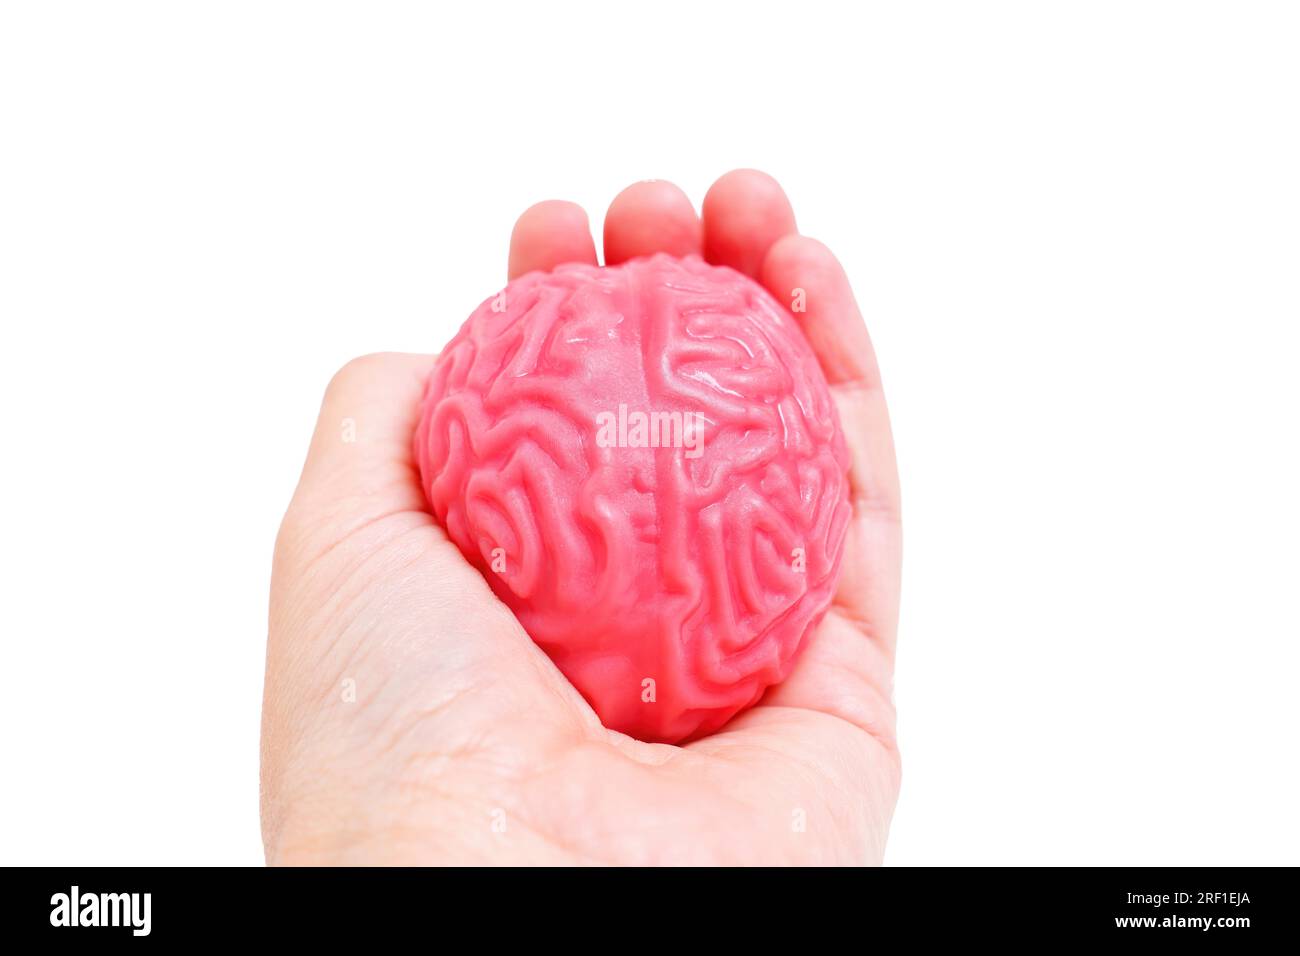 Nahaufnahme einer Hand, die ein gelee-ähnliches menschliches Gehirnmodell zusammendrückt, isoliert auf Weiß. Herausforderungen und intensives mentales Engagement. Stockfoto